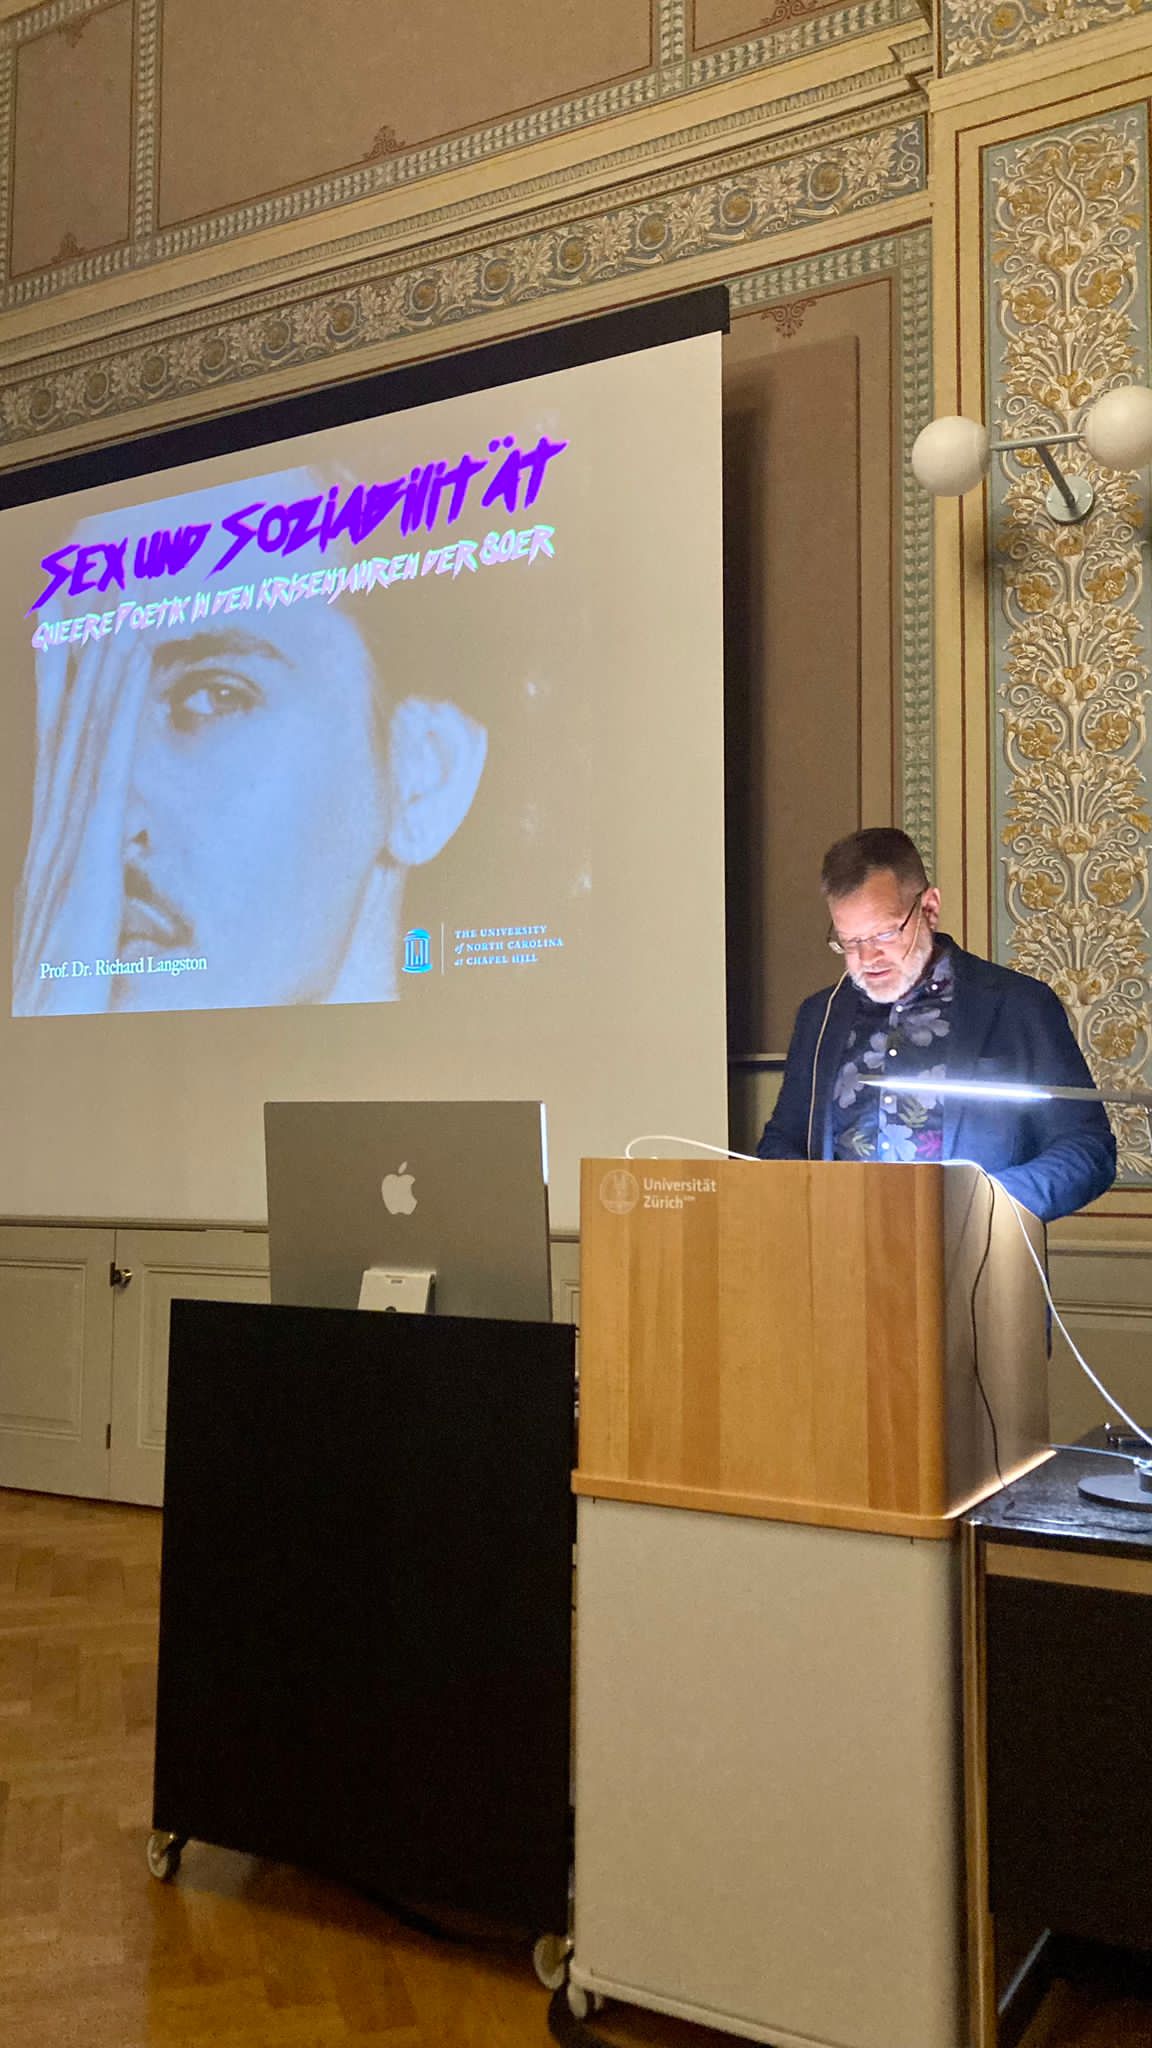 Das Foto zeigt Richard Langston am Rednerpult, im Hintergrund ist ein grosser Screen zu sehen, auf dem ein Mensch sein Gesicht mit einer Hand zur Hälfte abdeckt.